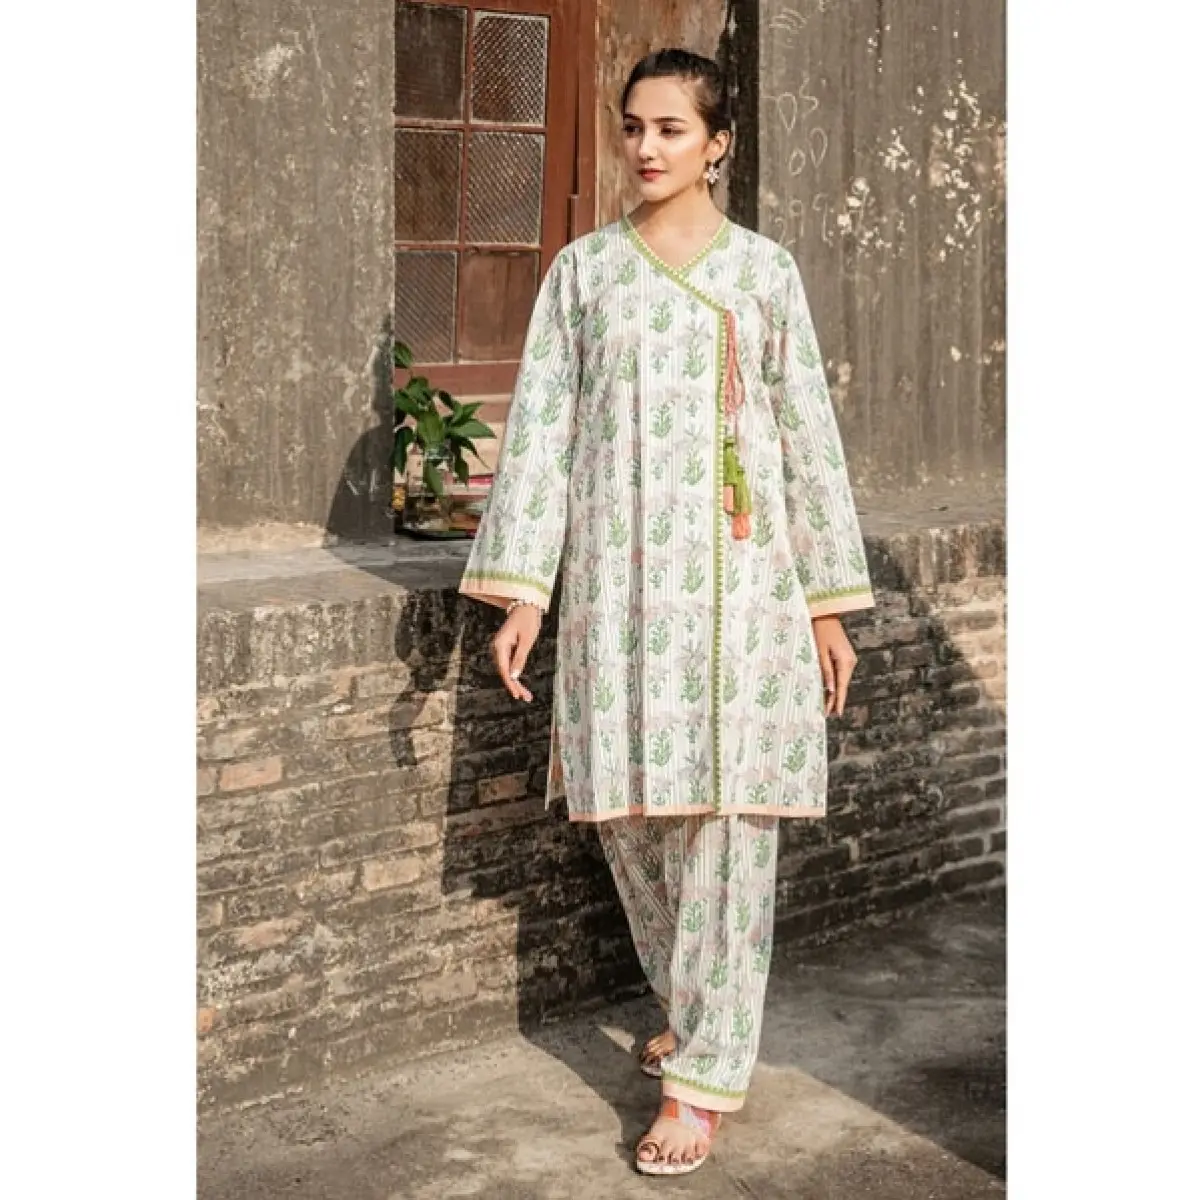 Gaun Rumput Kasual Baru Desain Baru Pakistan Penjualan Laris Warna Cantik Walet Kameez